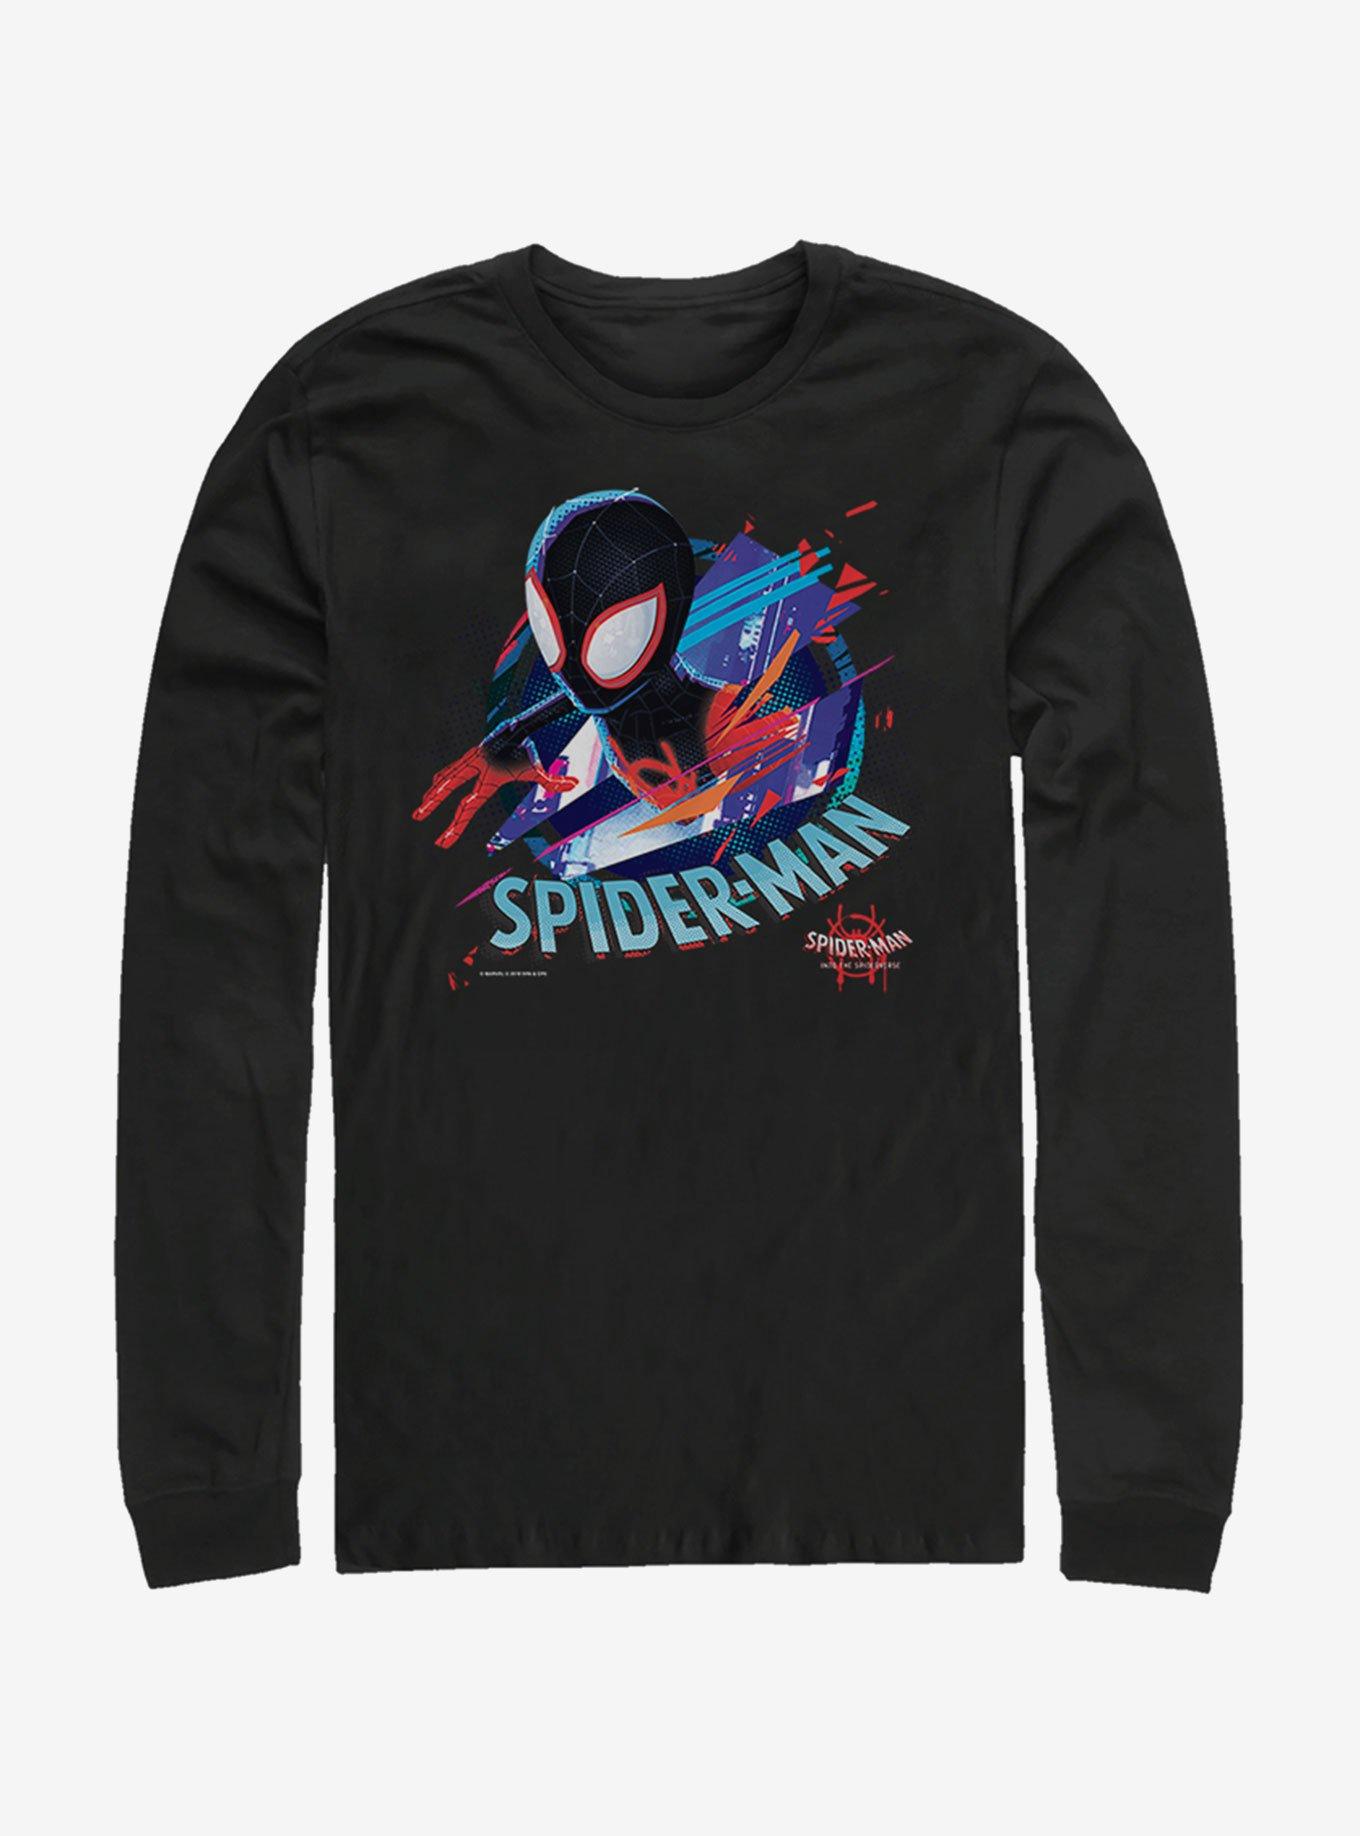 Marvel Spider-Man Cracked Spider Long-Sleeve T-Shirt, BLACK, hi-res